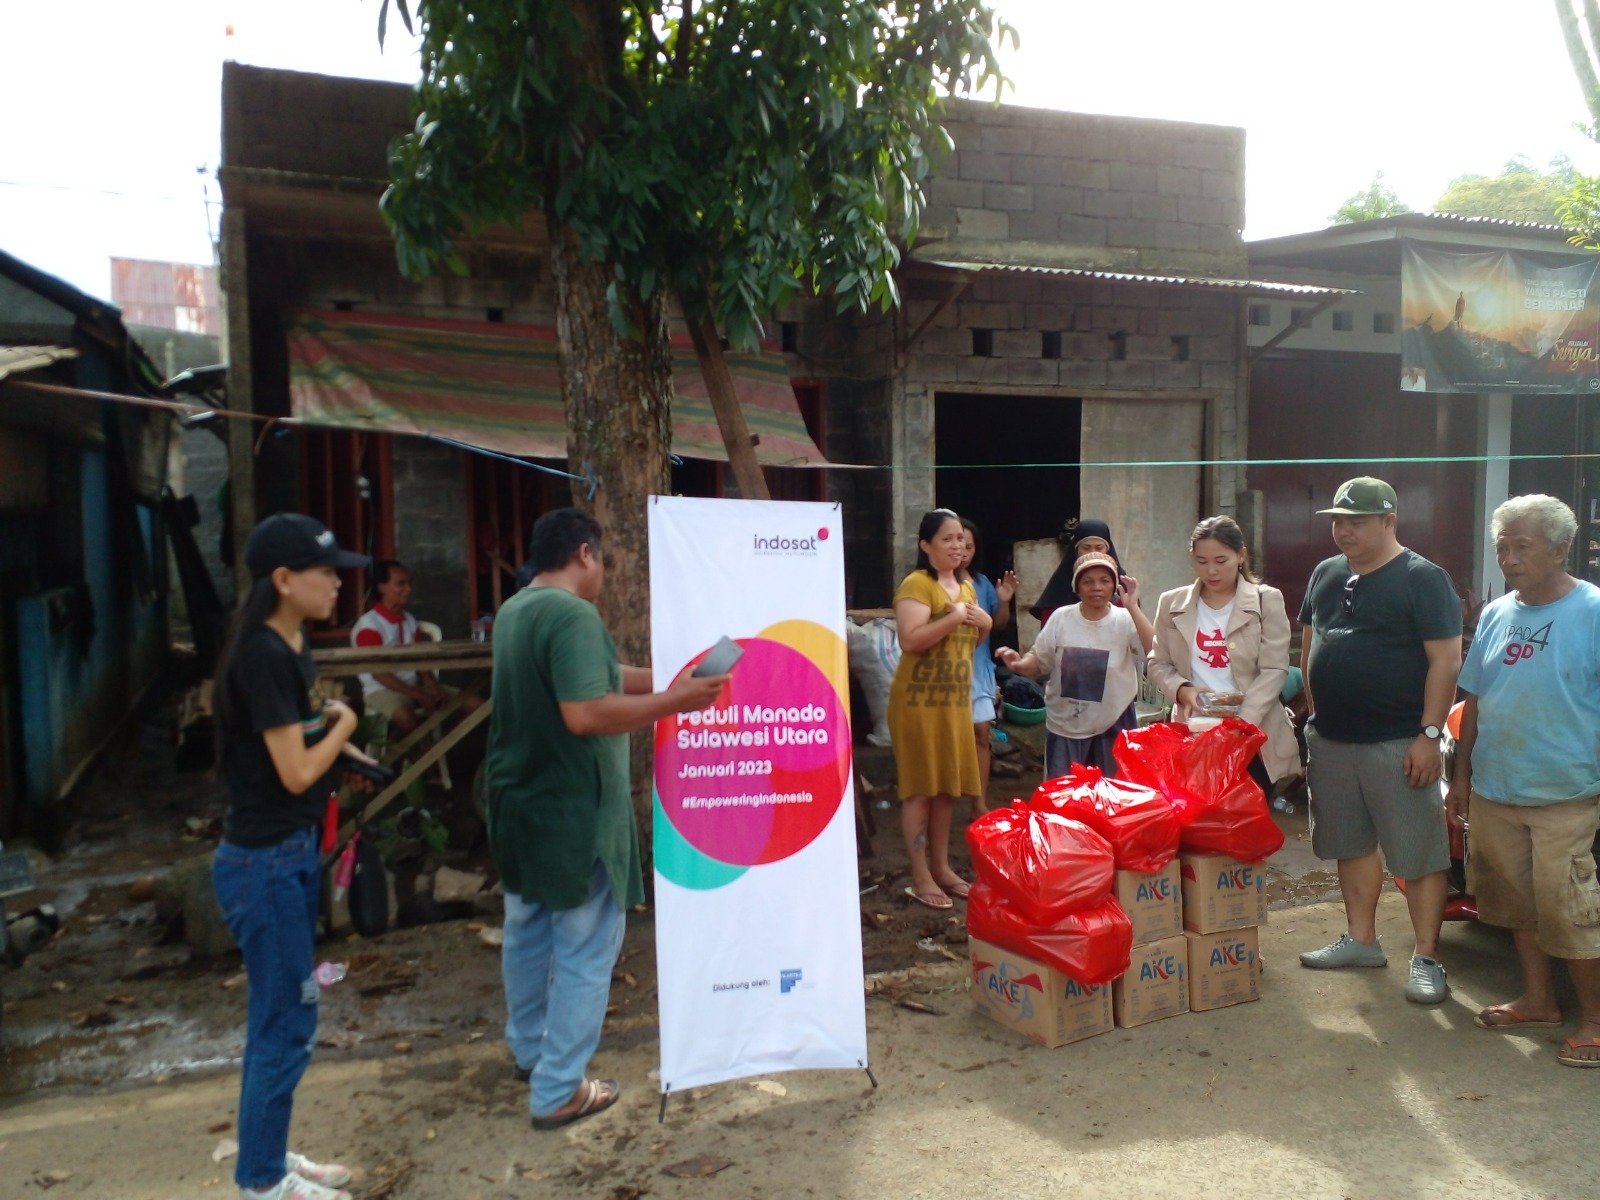 IOH berkoordinasi dengan Badan Penanggulangan Bencana Daerah (BPBD) dan pemerintah daerah menyalurkan bantuan berupa bahan kebutuhan pokok dan komunikasi bagi masyarakat yang terdampak bencana banjir dan longsor di kota Manado.